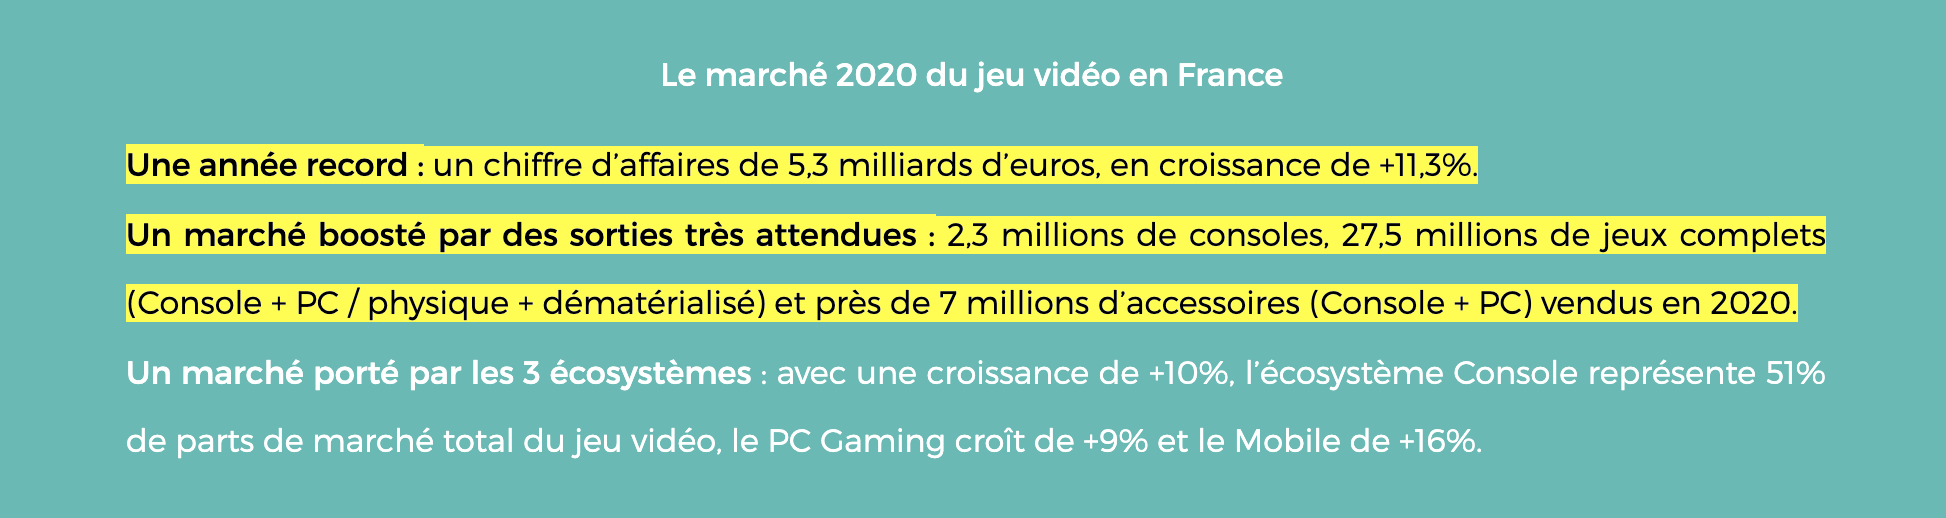 Le marché 2020 du jeu vidéo en France